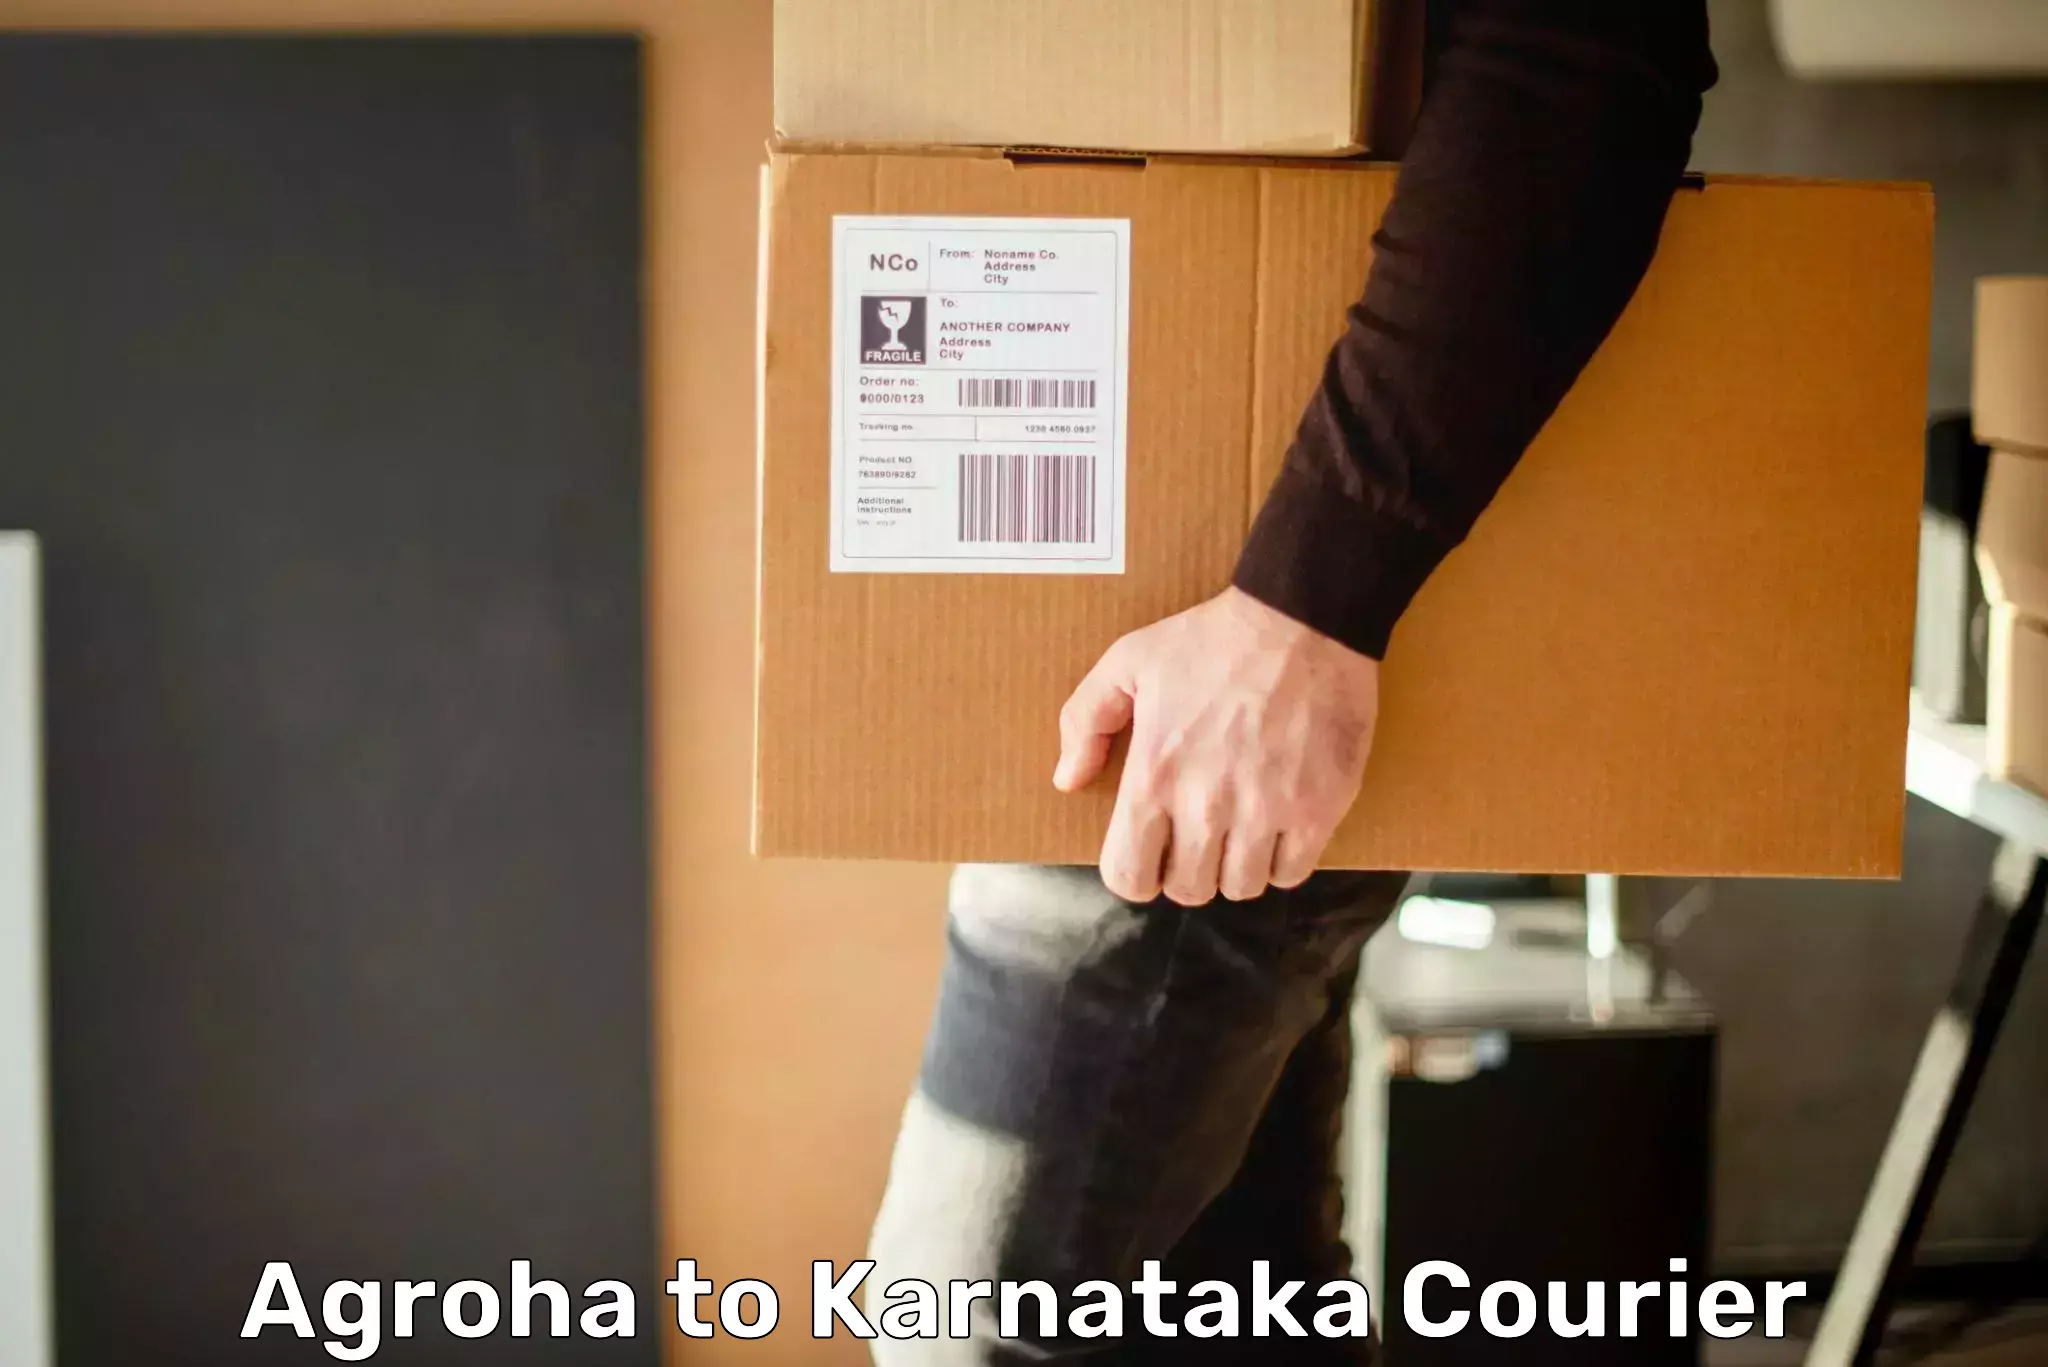 Global delivery options Agroha to Karnataka